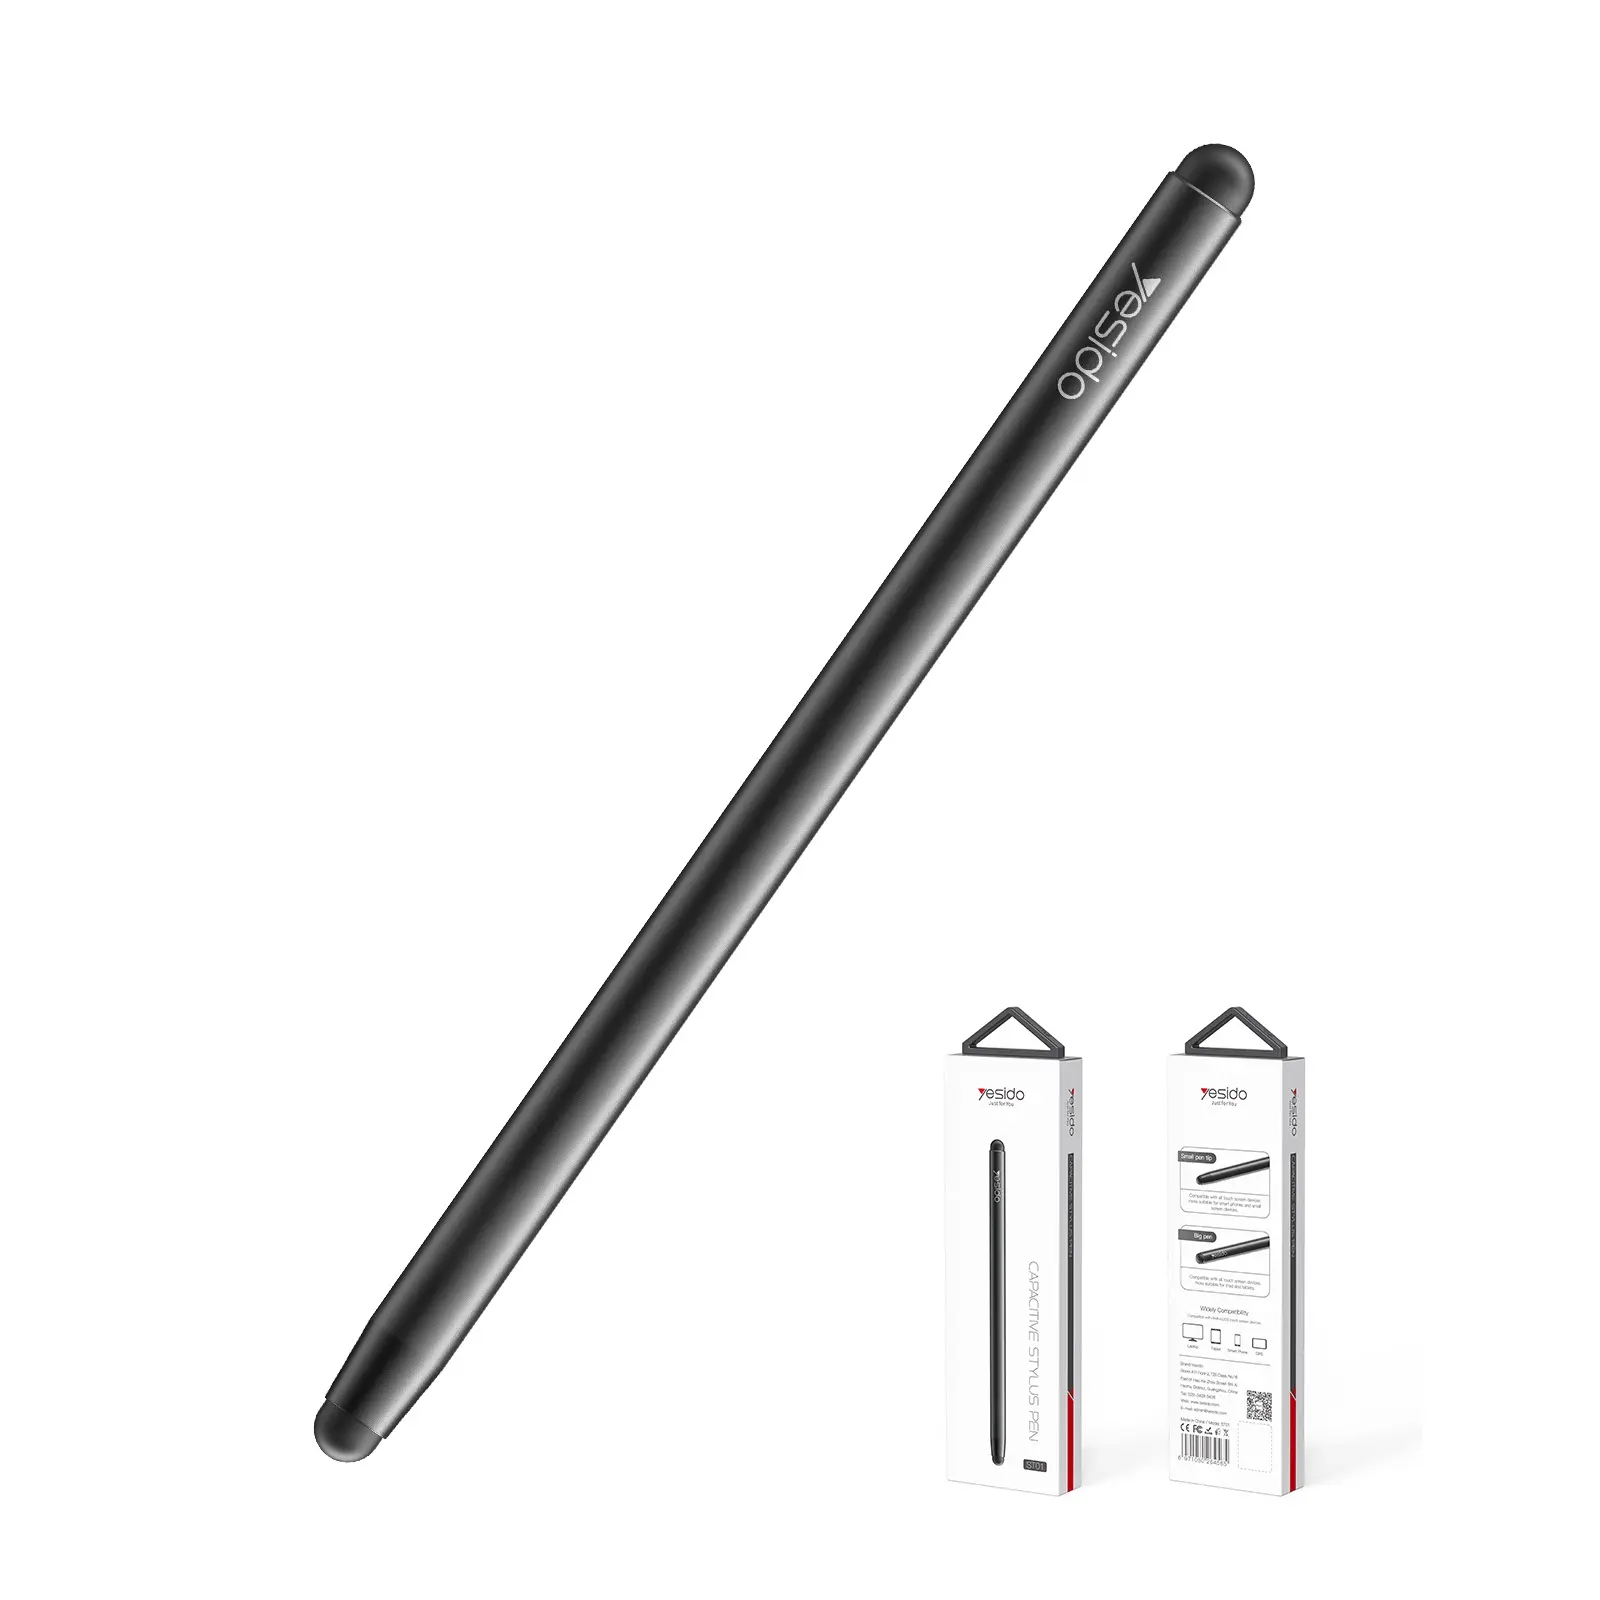 ปากกาสไตลัสหน้าจอสัมผัสอัจฉริยะแท็บเล็ต,2 In 1 Capacitive สำหรับ Ipad Apple Iphone Android Samsung แล็ปท็อป